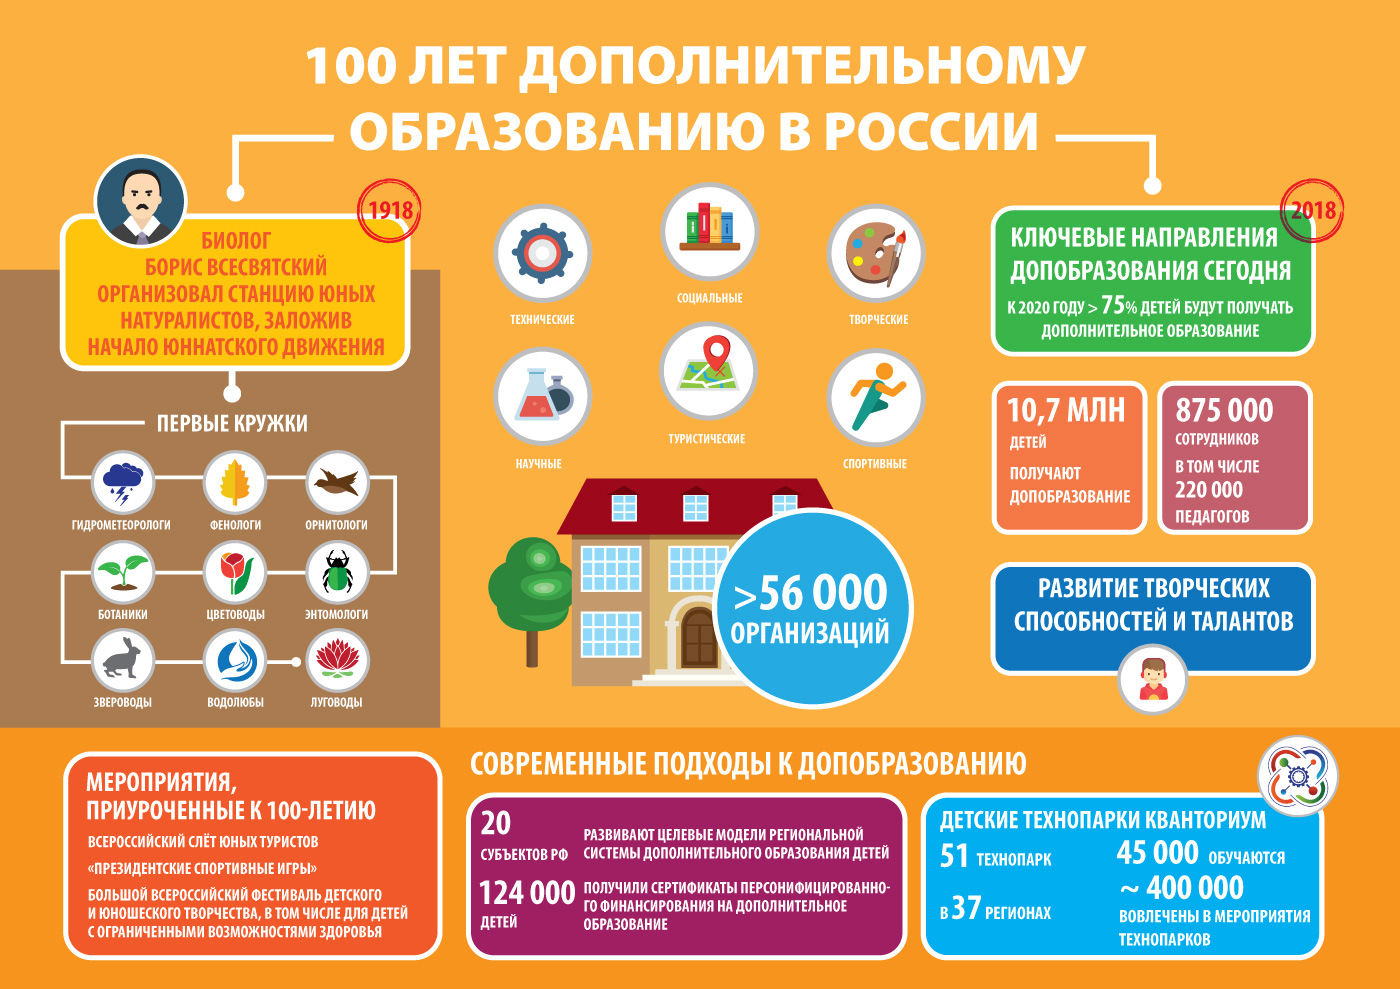 100 лет системе дополнительного образования в России